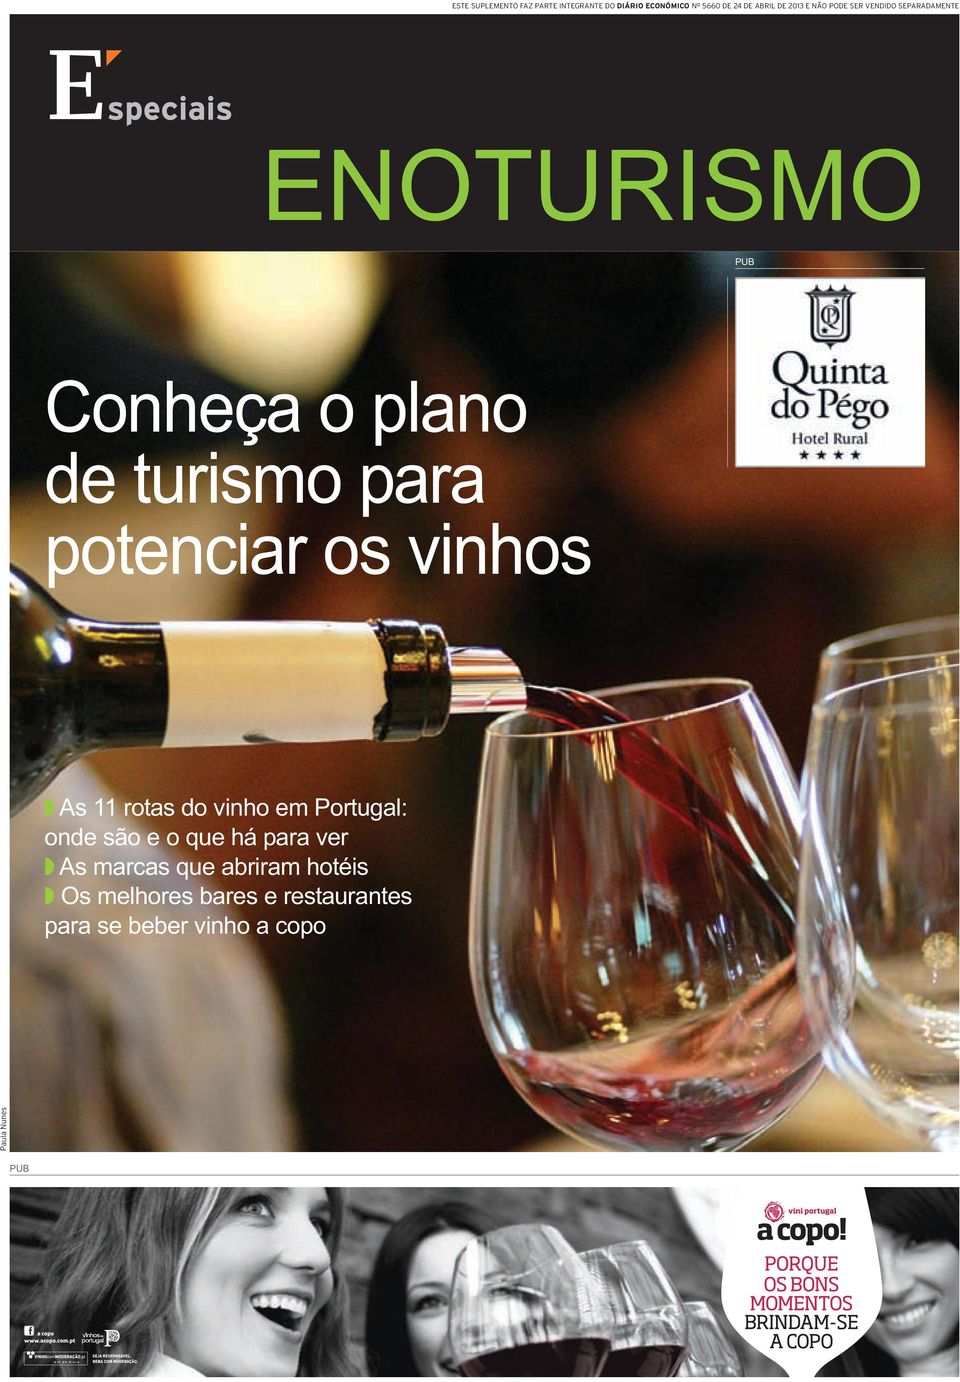 potenciar os vinhos As 11 rotas do vinho em Portugal: onde são e o que há para ver As